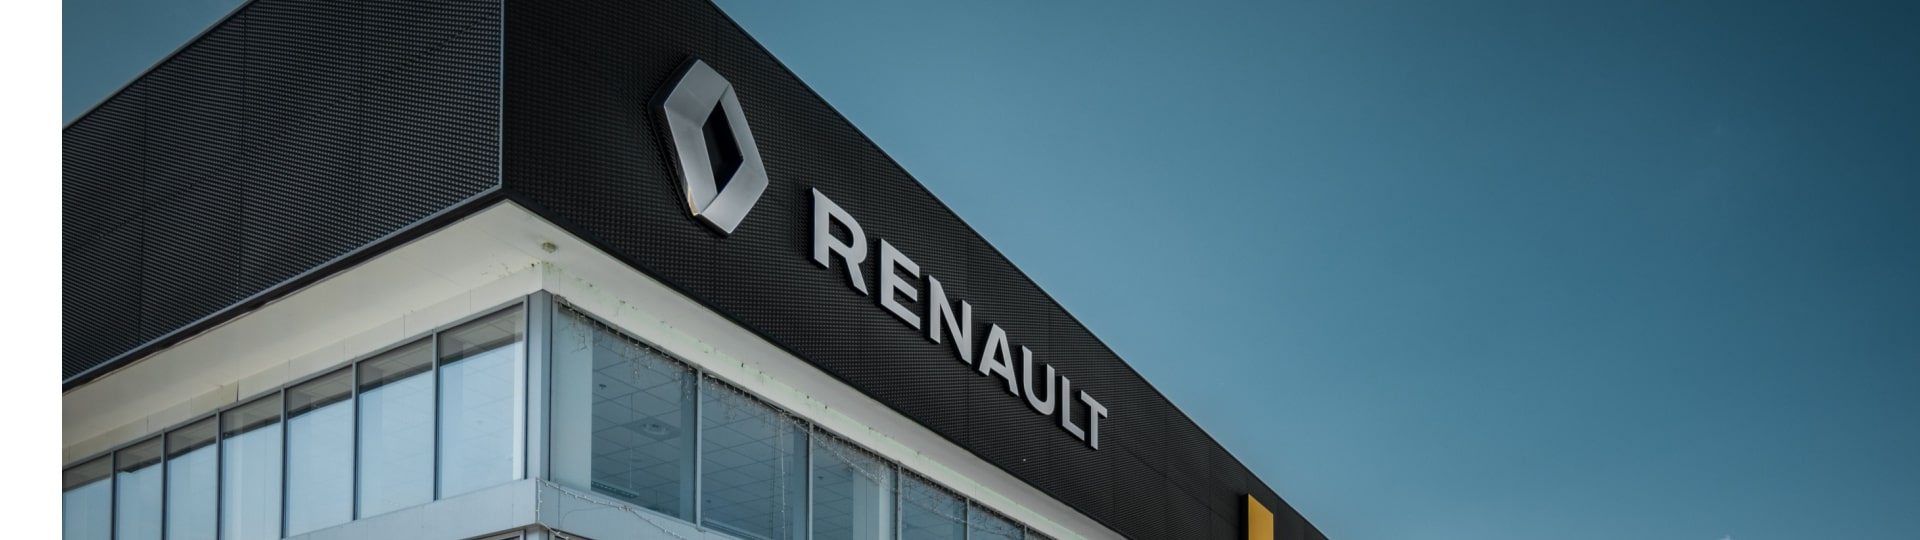 Renault za čtvrtletí zvýšil tržby o 30 procent